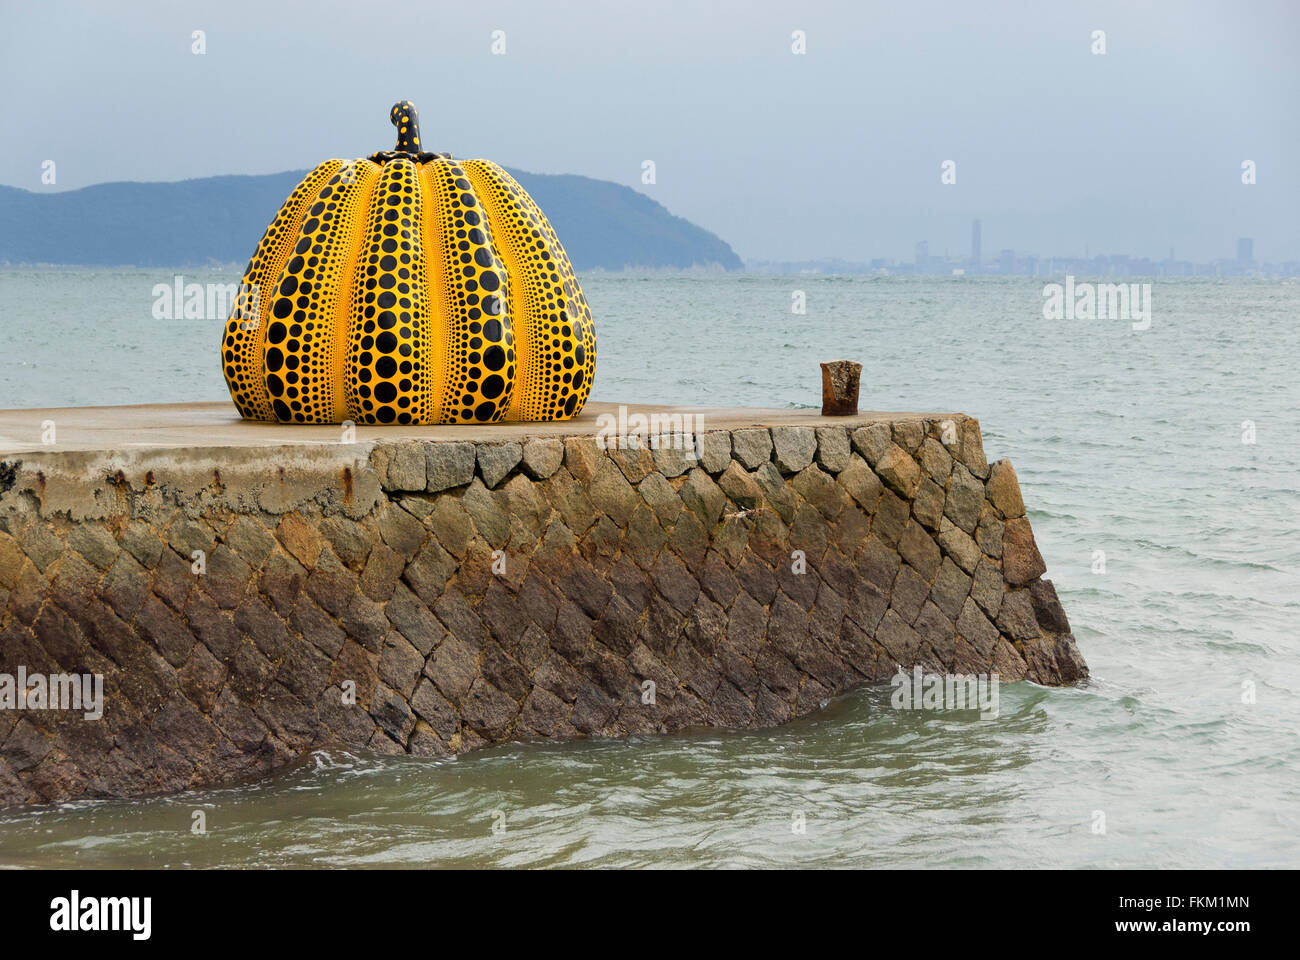 'Pumpkin' sculpture par Yayoi Kusama sur l'île de Naoshima au Japon Banque D'Images